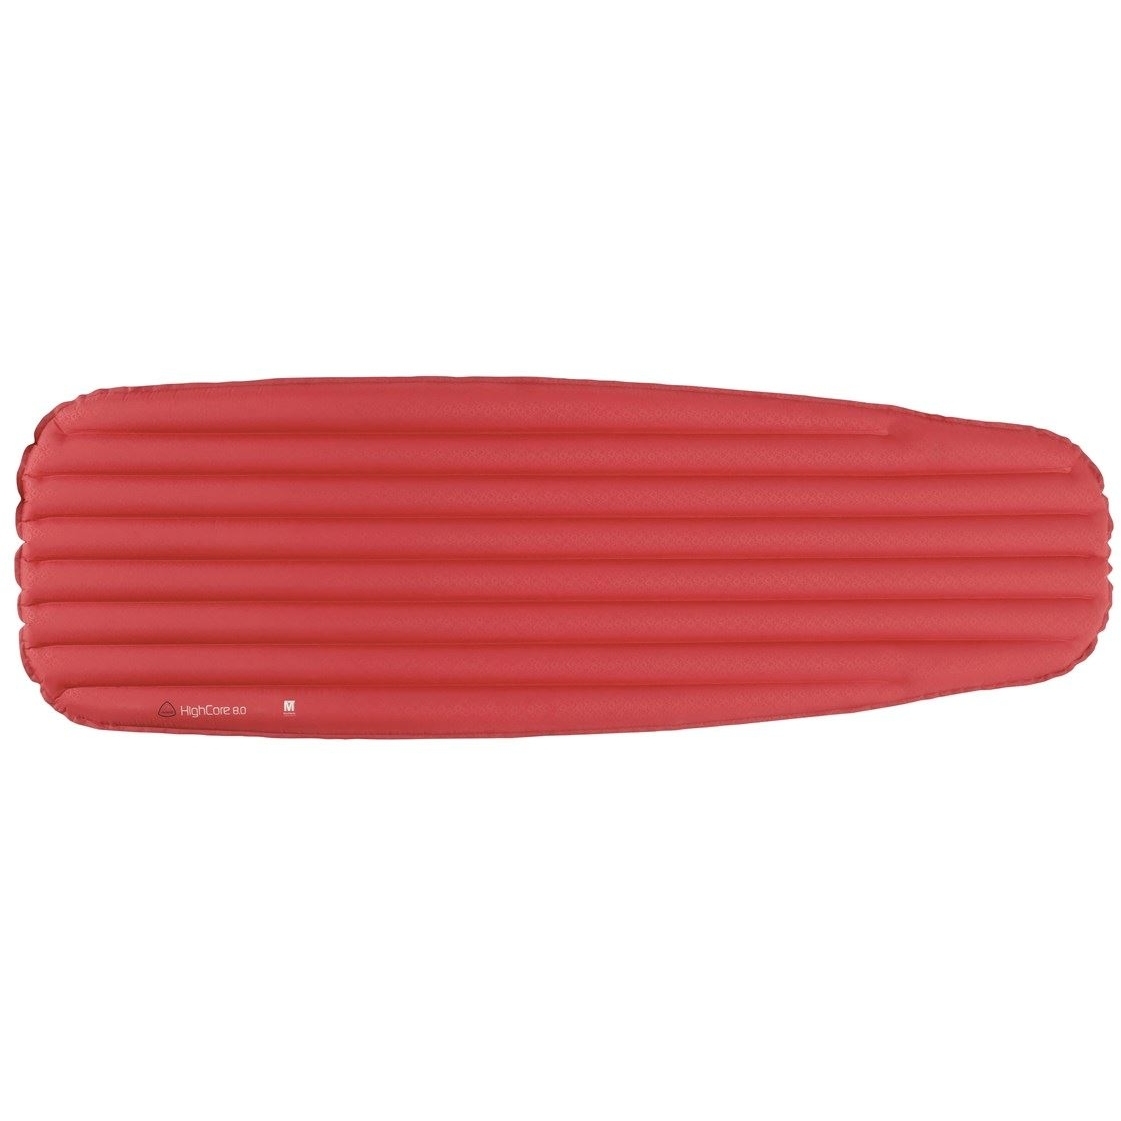 Productfoto van Robens HighCore 80 Opblaasbare Isolatiemat - rood